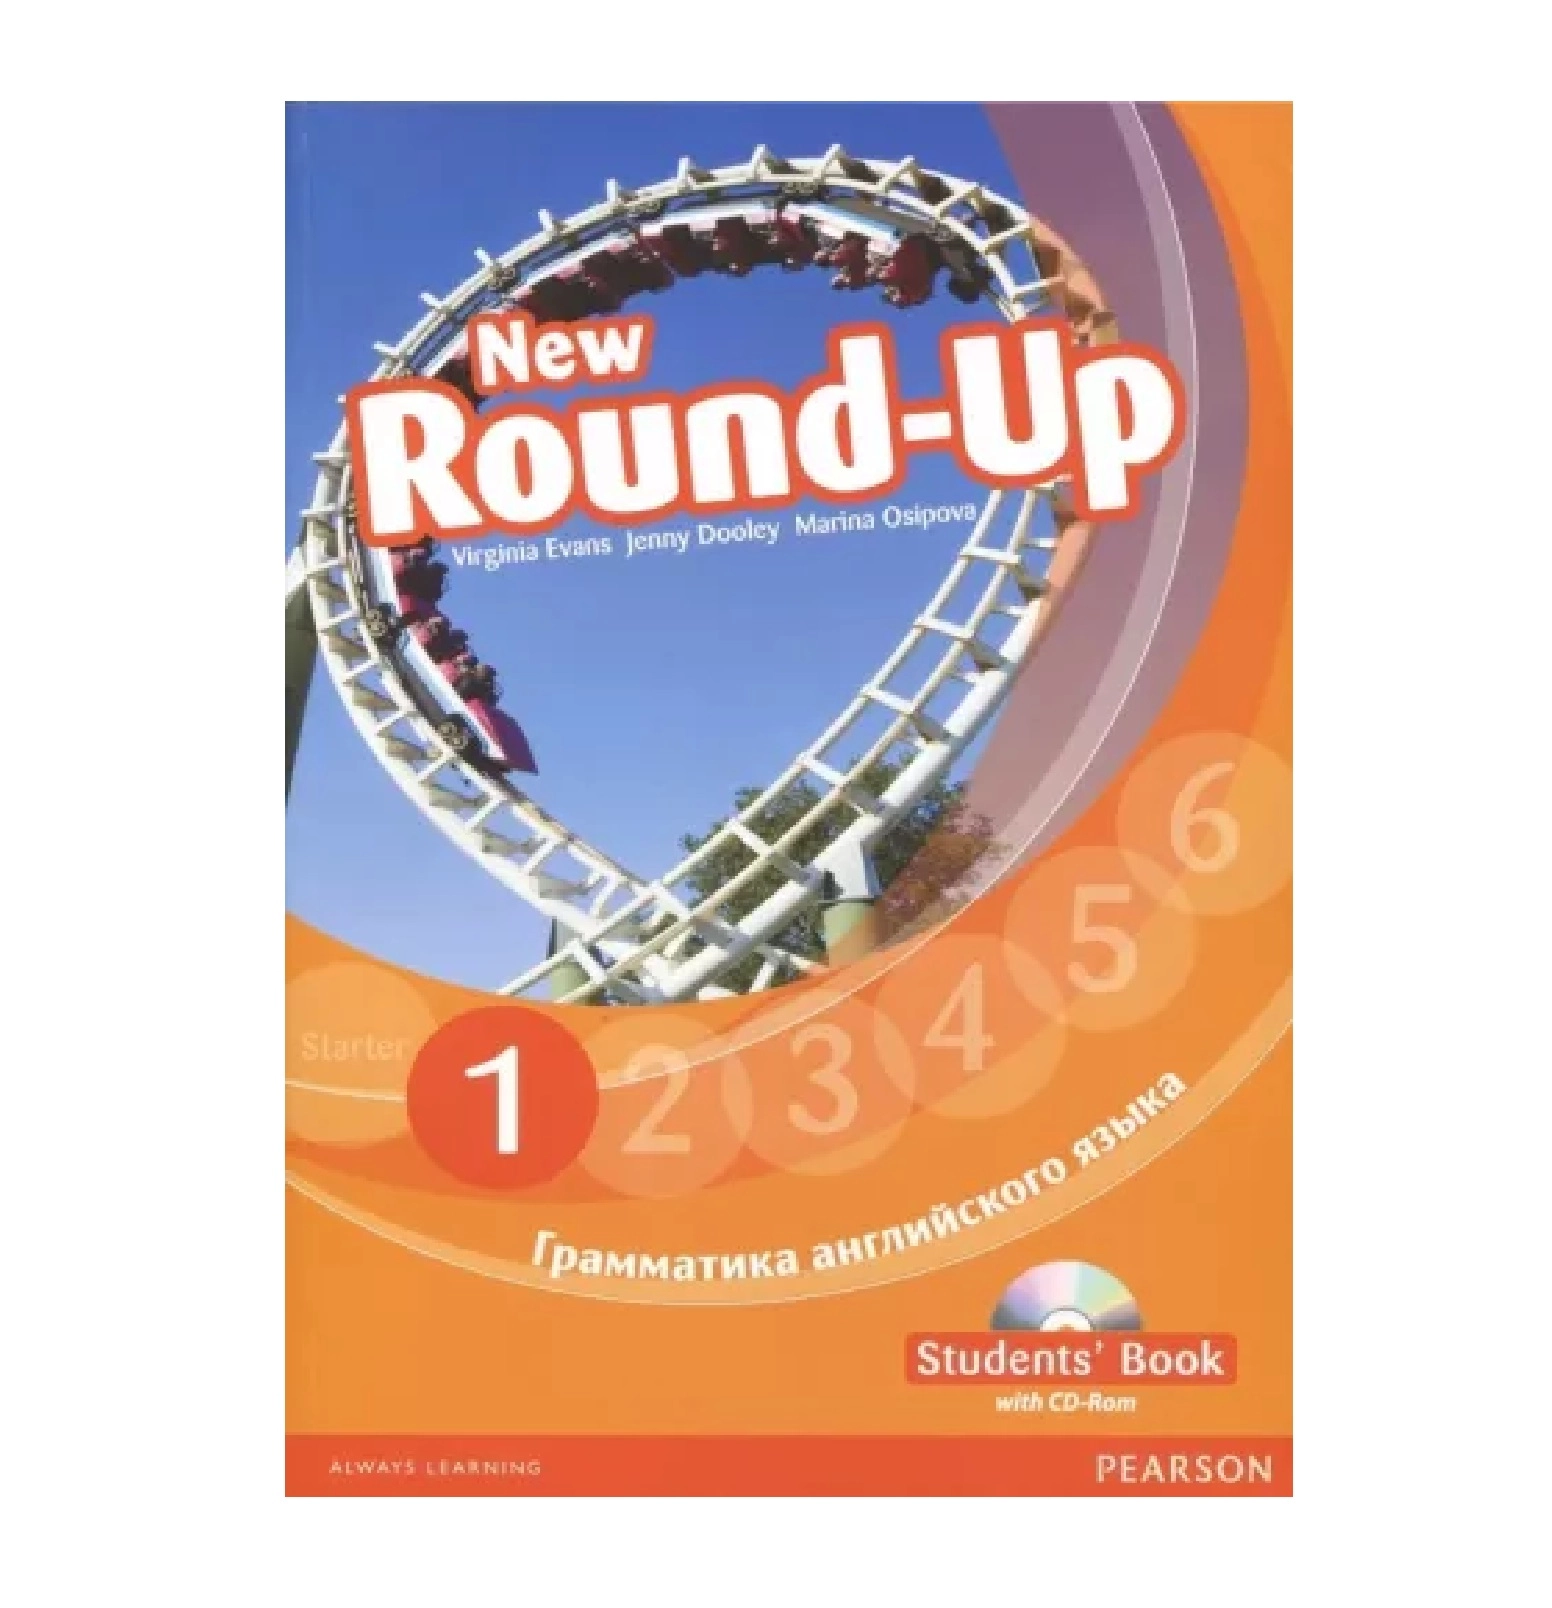 Round up 2 4. Round up 1 Virginia Evans. Английский New Round up Starter. Round up 1 students book грамматика английского языка. New Round up 6.